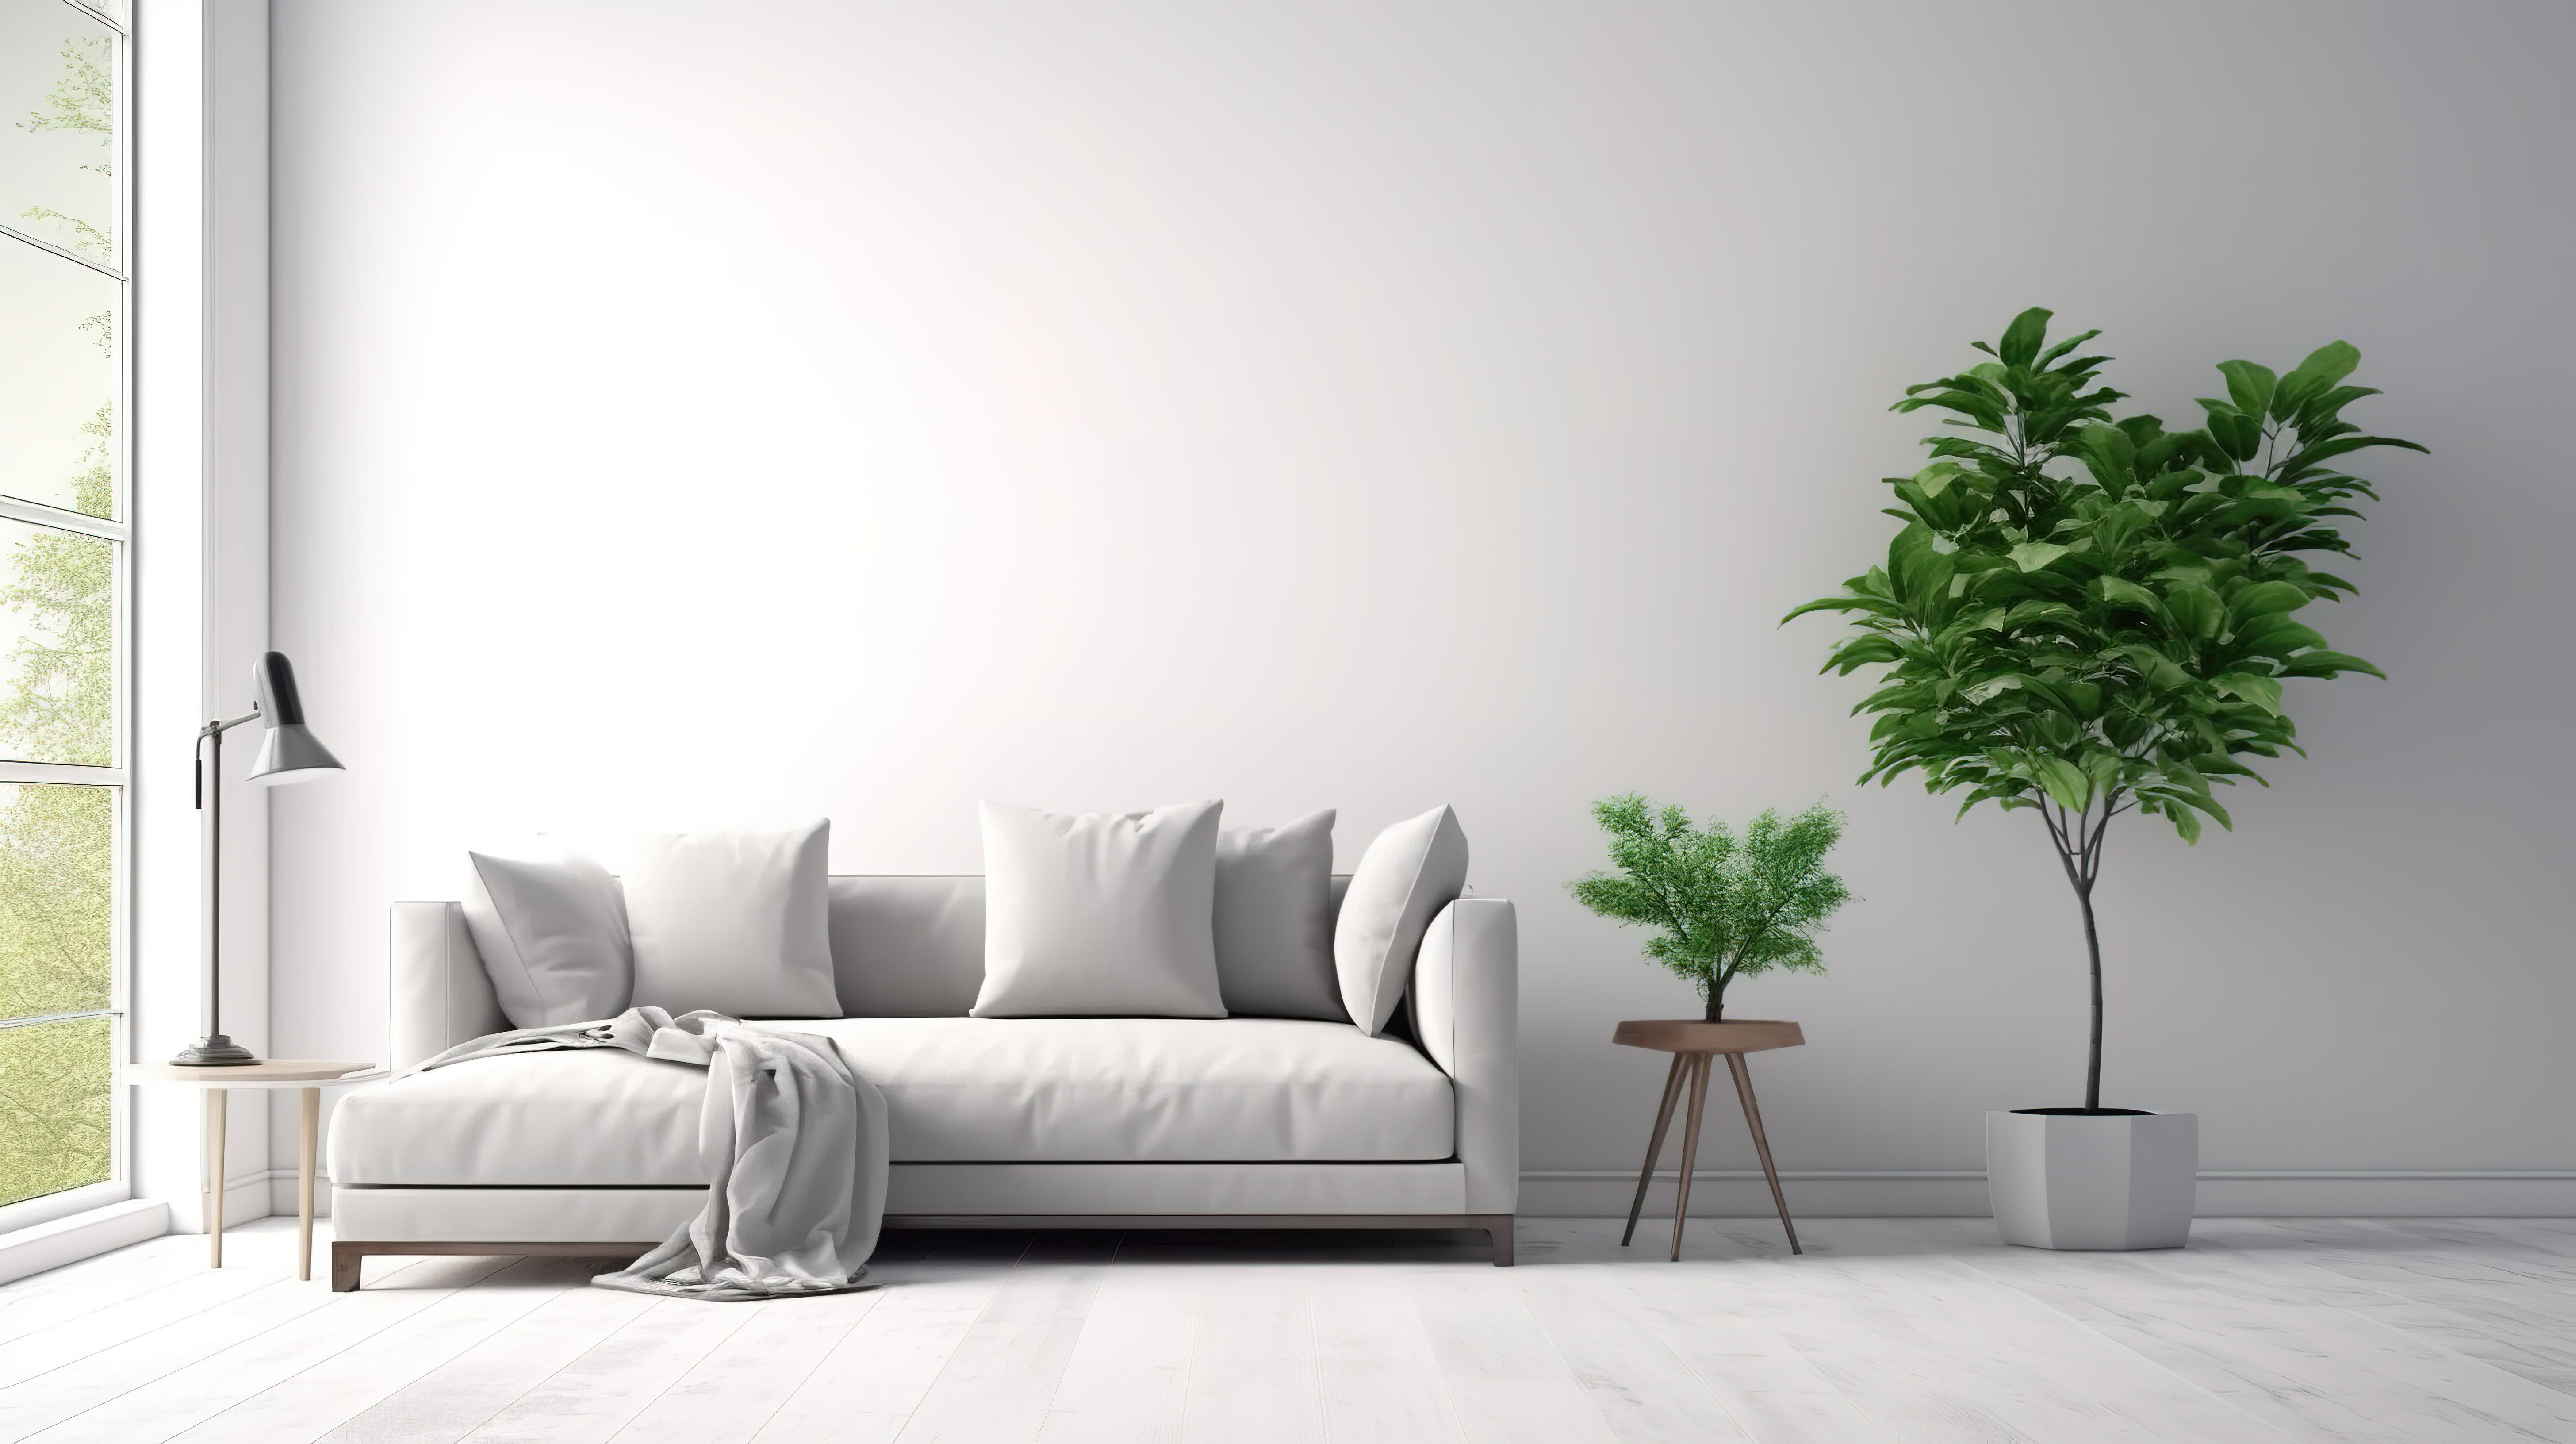 白色背景的 3D 渲染与灰色布艺沙发和枕头创建客厅内墙模型图片